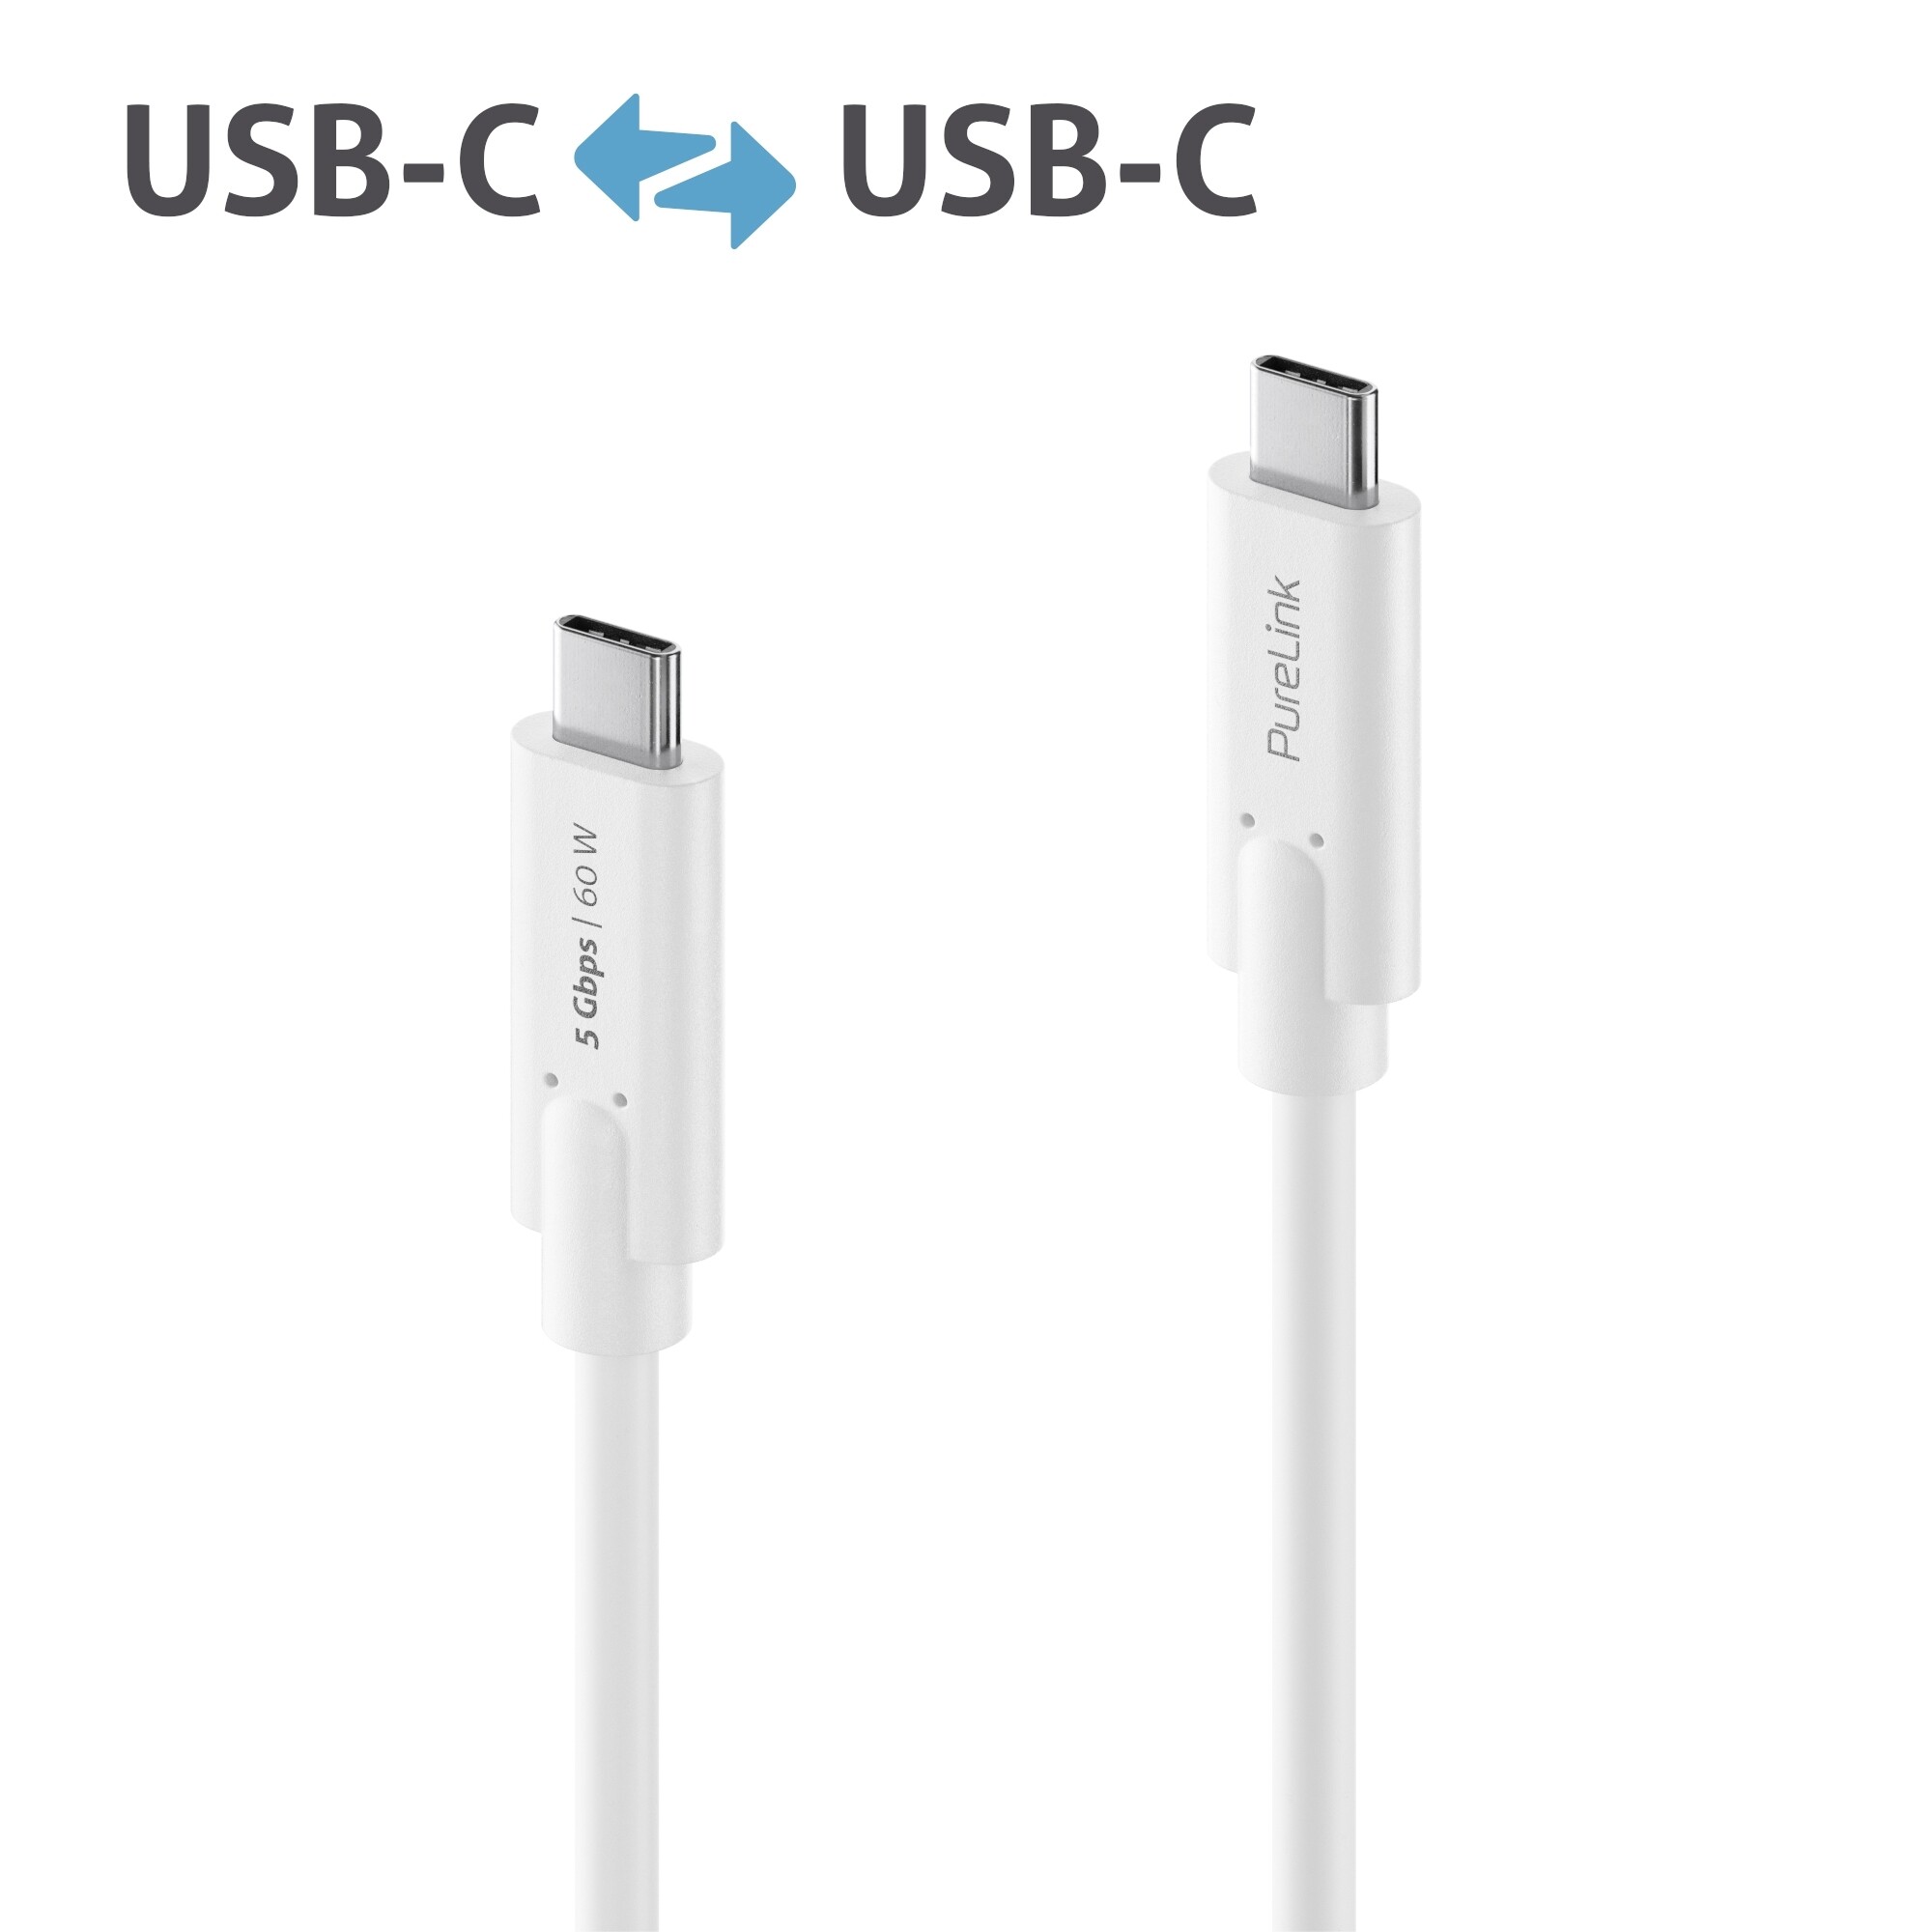 Purelink-IS2500-015-USB-C-auf-USB-C-Kabel-1-5m-weiss